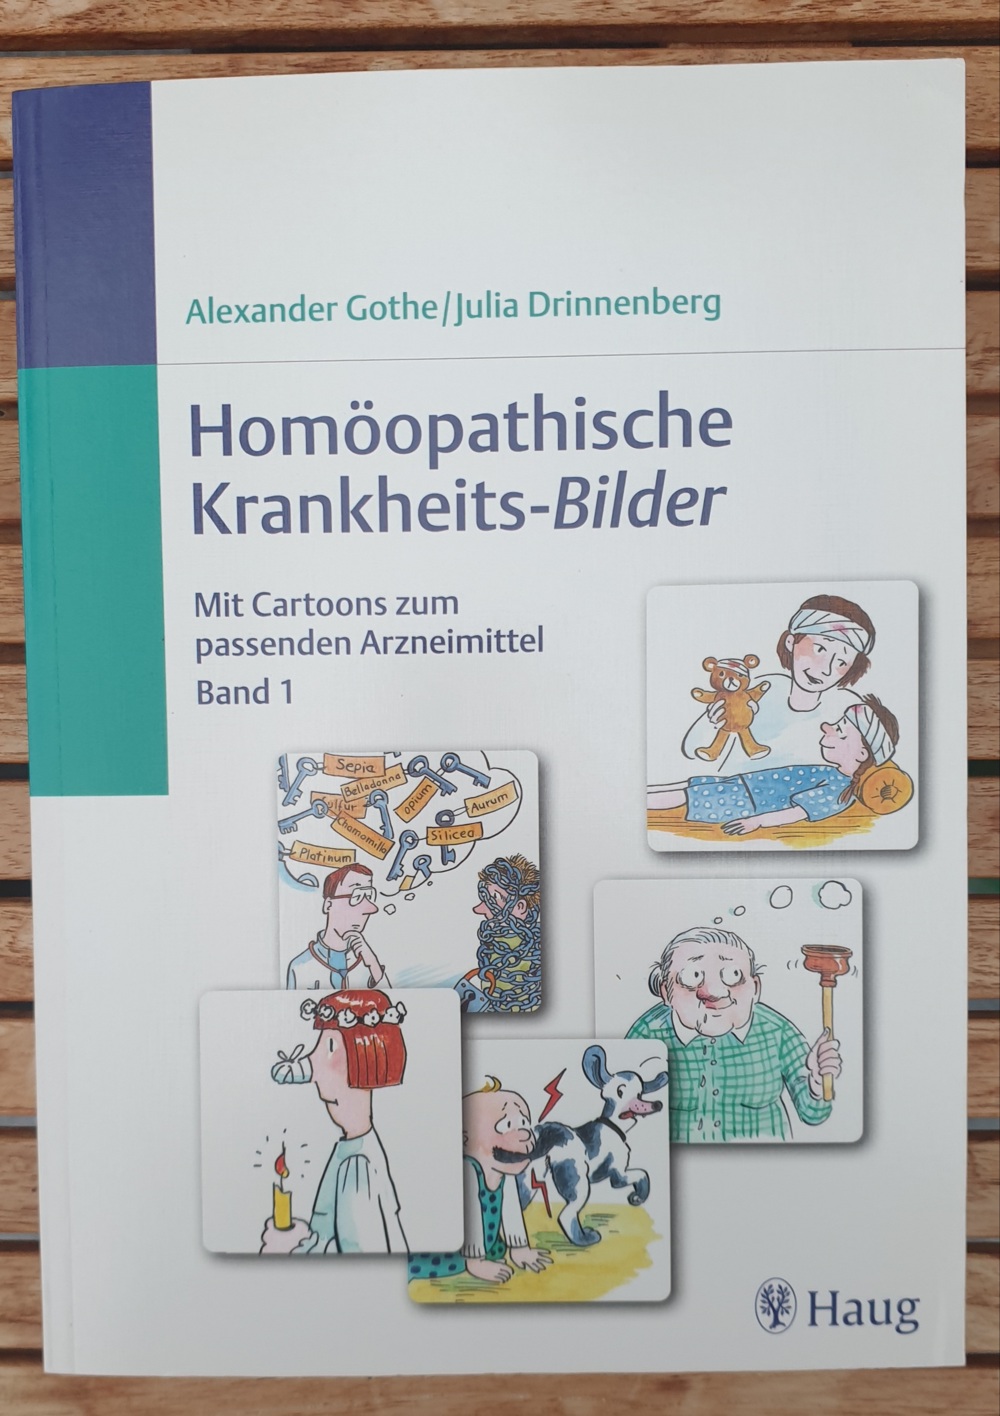 Homöopathische Krankheits-Bilder 1 - Gothe Drinnenberg, neuwertig